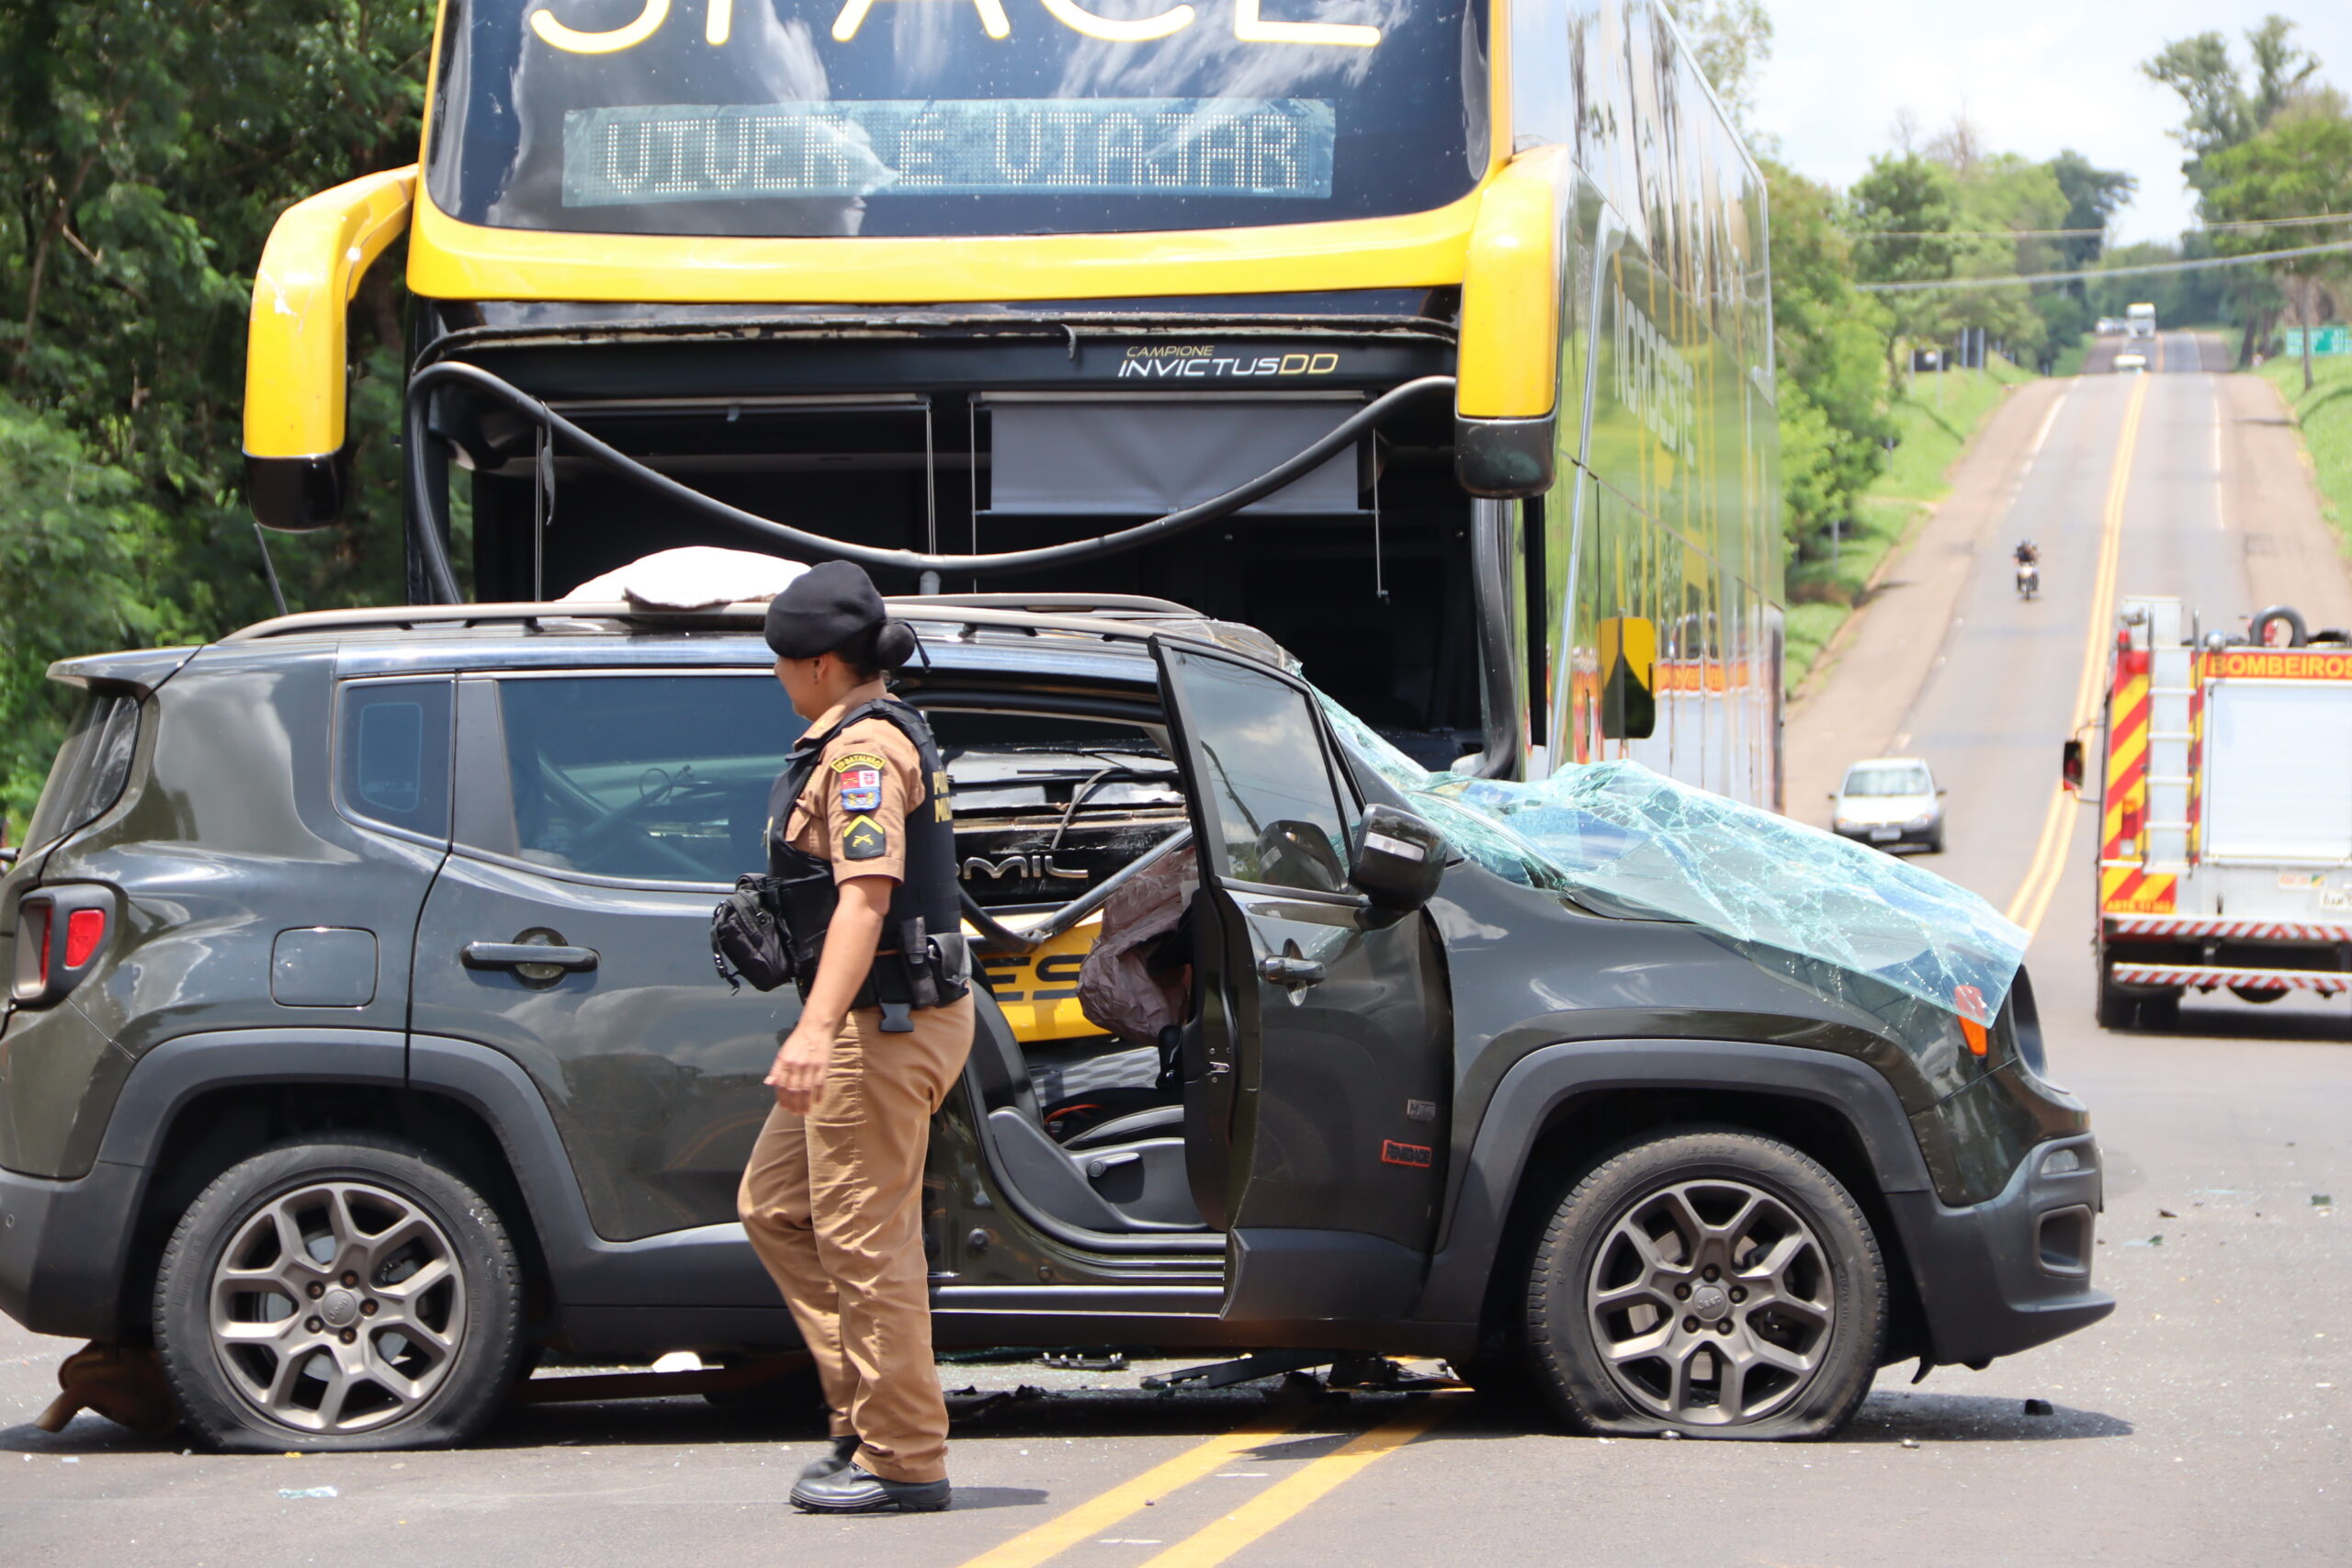 Jornal Ilustrado - Batida entre carro e ônibus deixa cinco feridos na PR-323, em Cafezal do Sul  